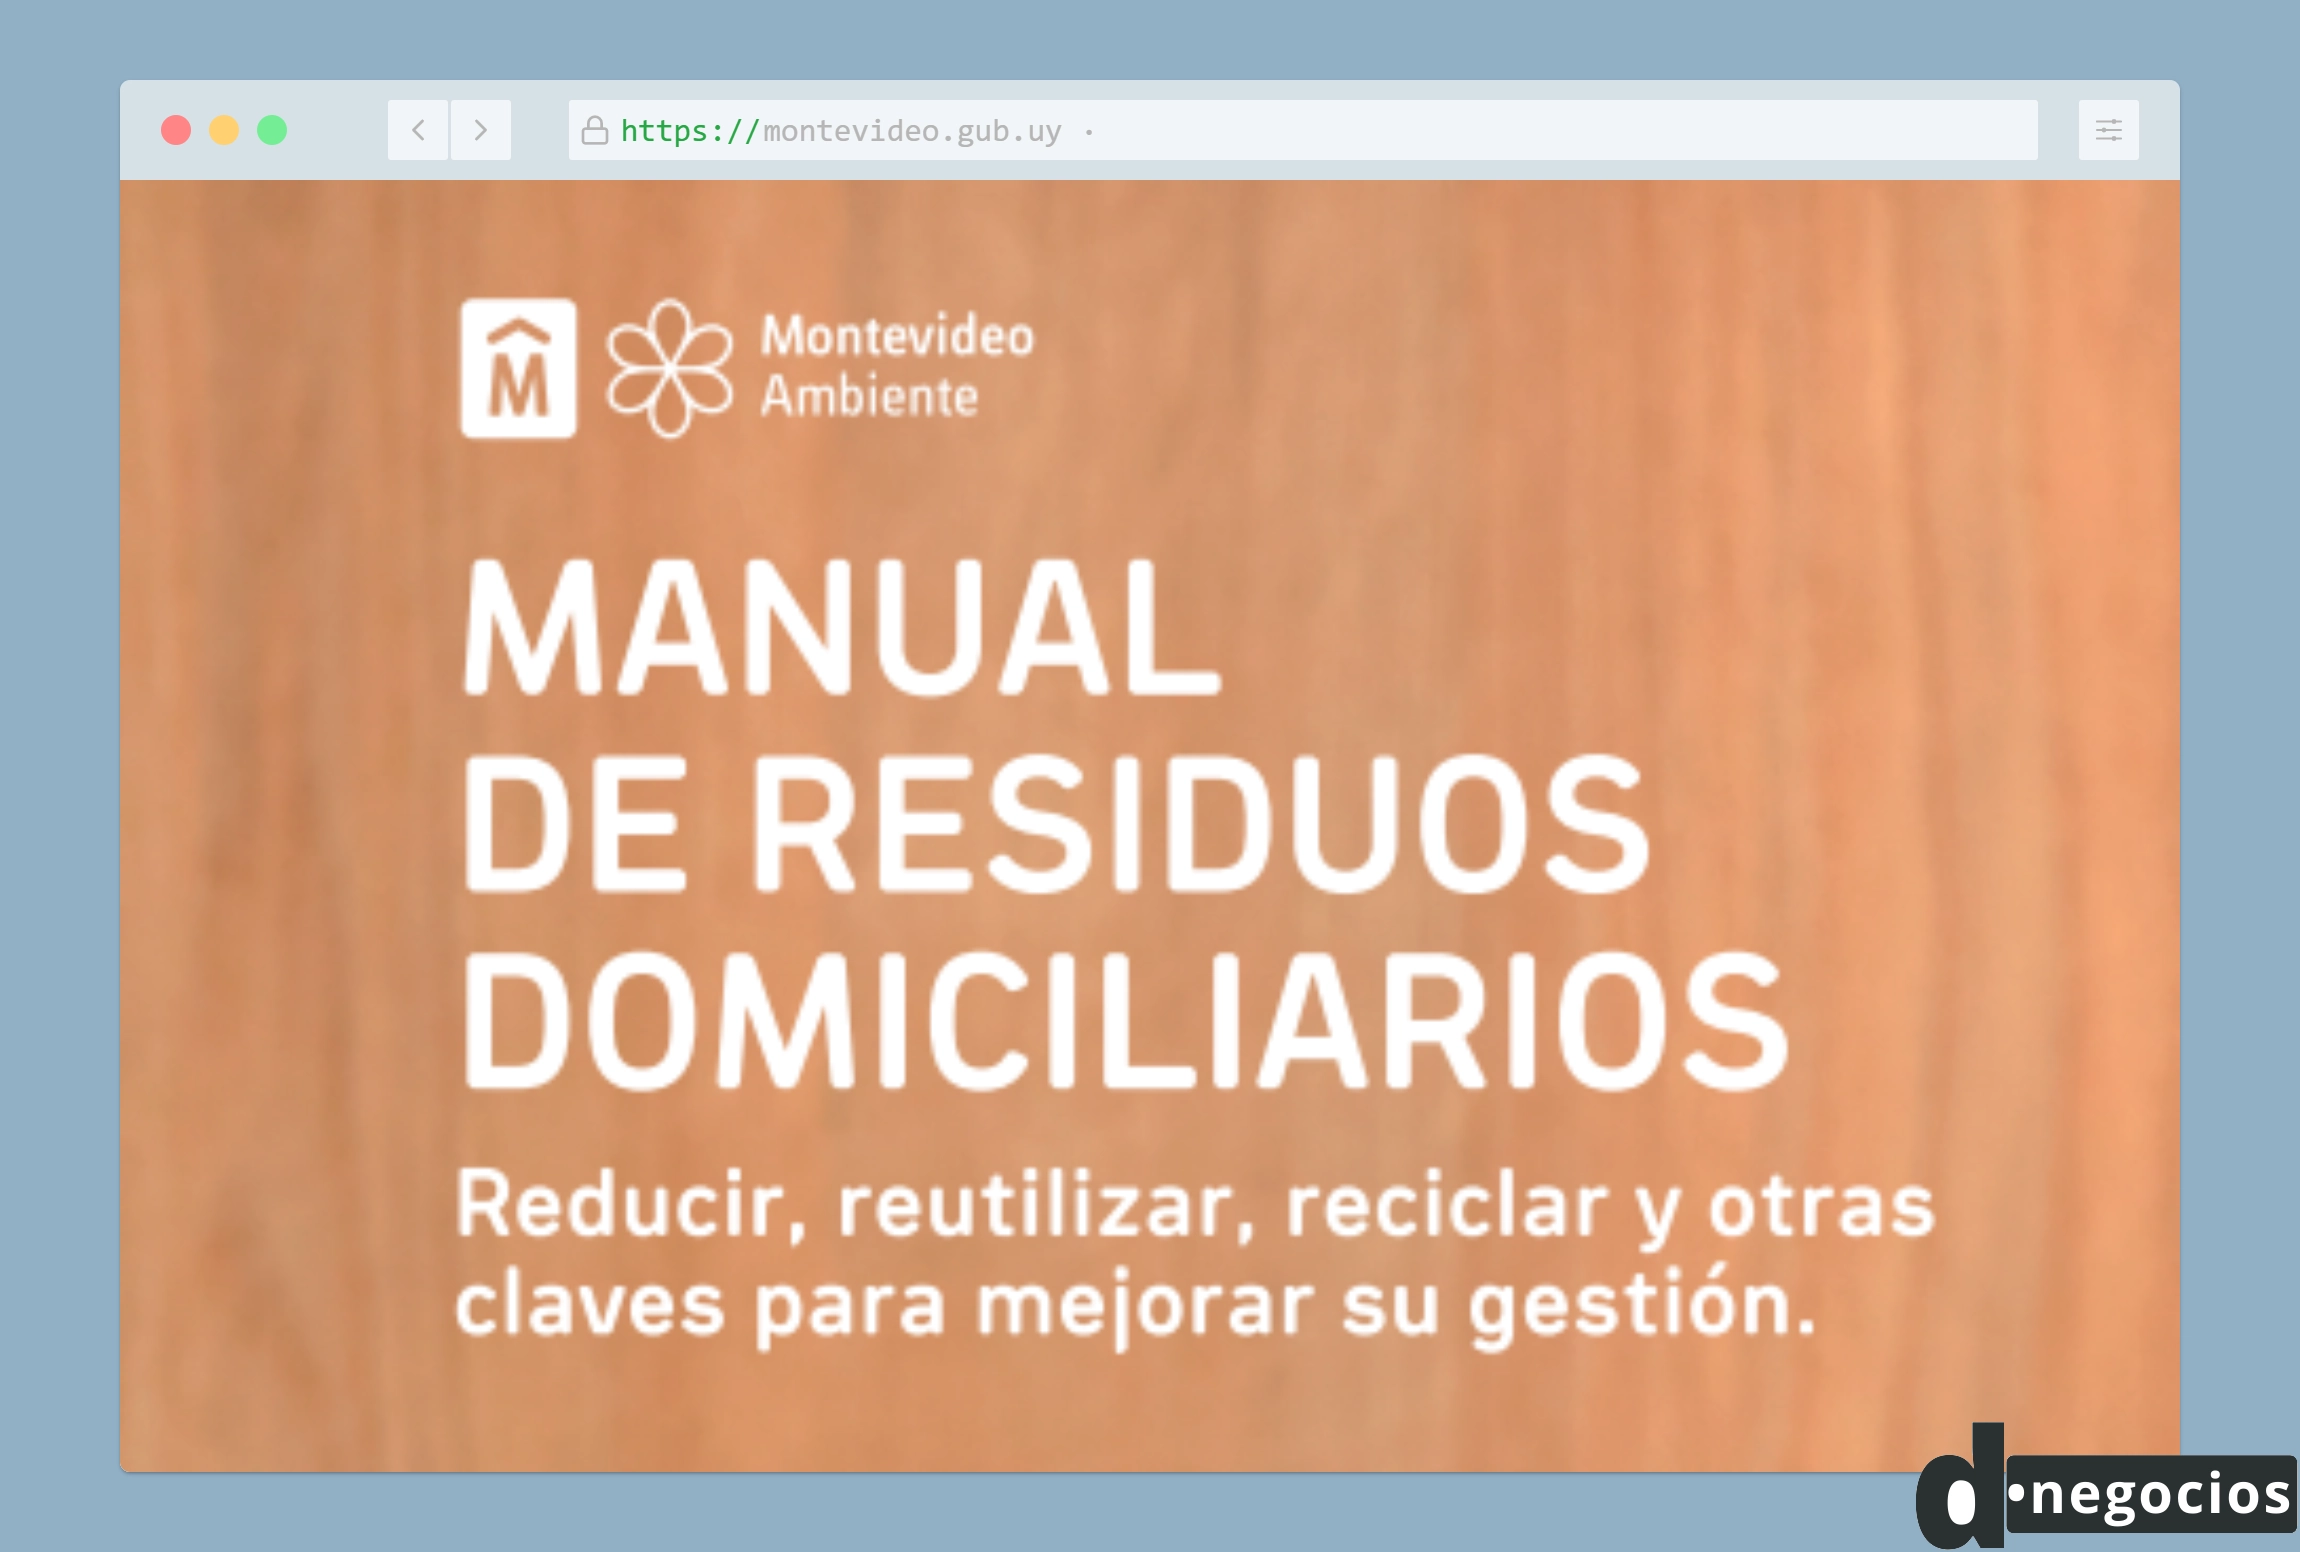 Manual de Residuos Domiciliarios de la Intendencia de Montevideo.